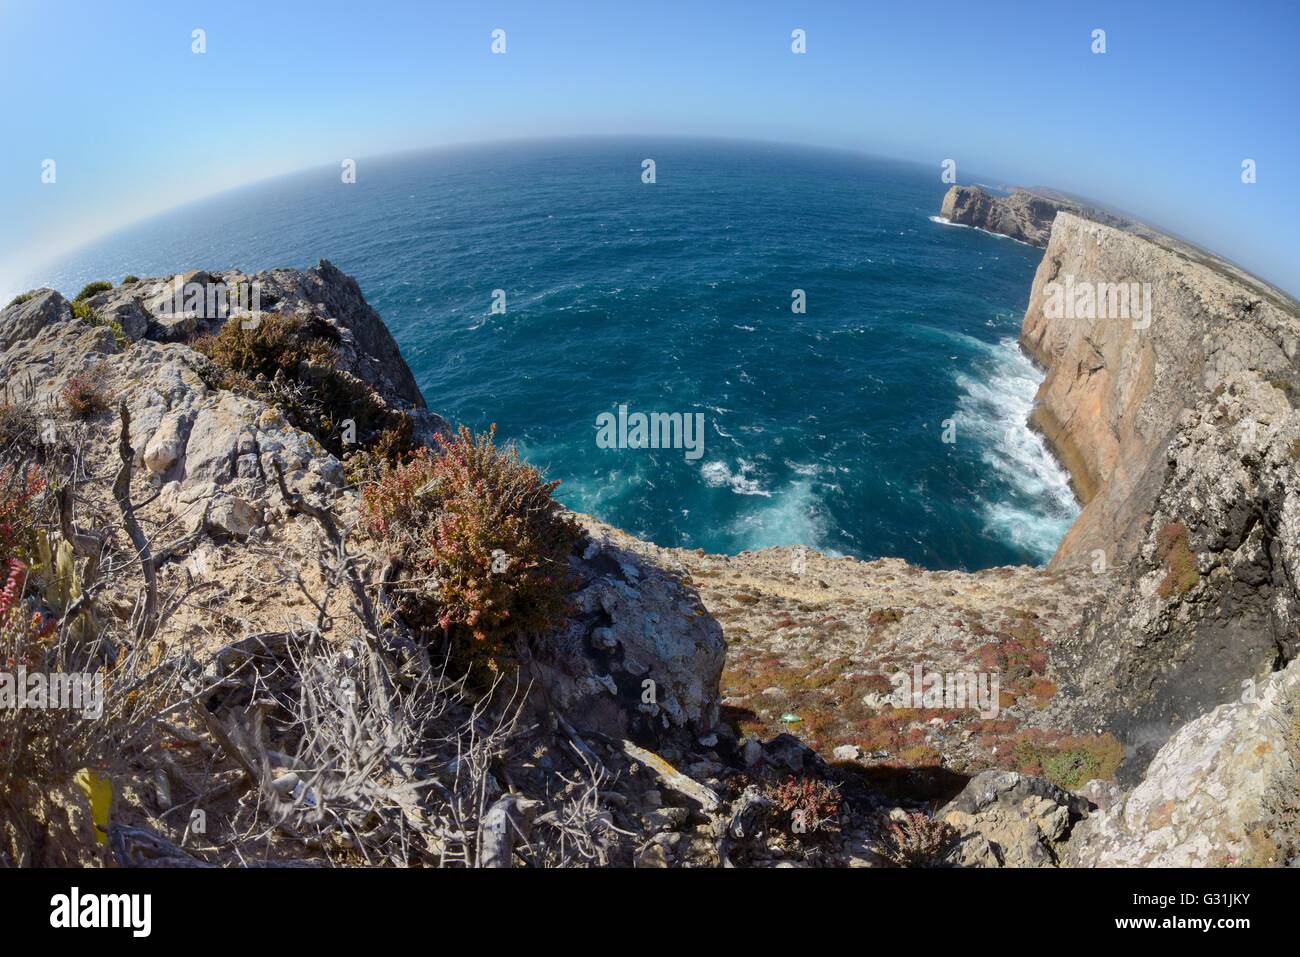 Vue fisheye de falaises calcaires du nord du Cap Saint-vincent (Cabo de Sao Vicente), du sud-ouest de l'Europe dans son point. Banque D'Images